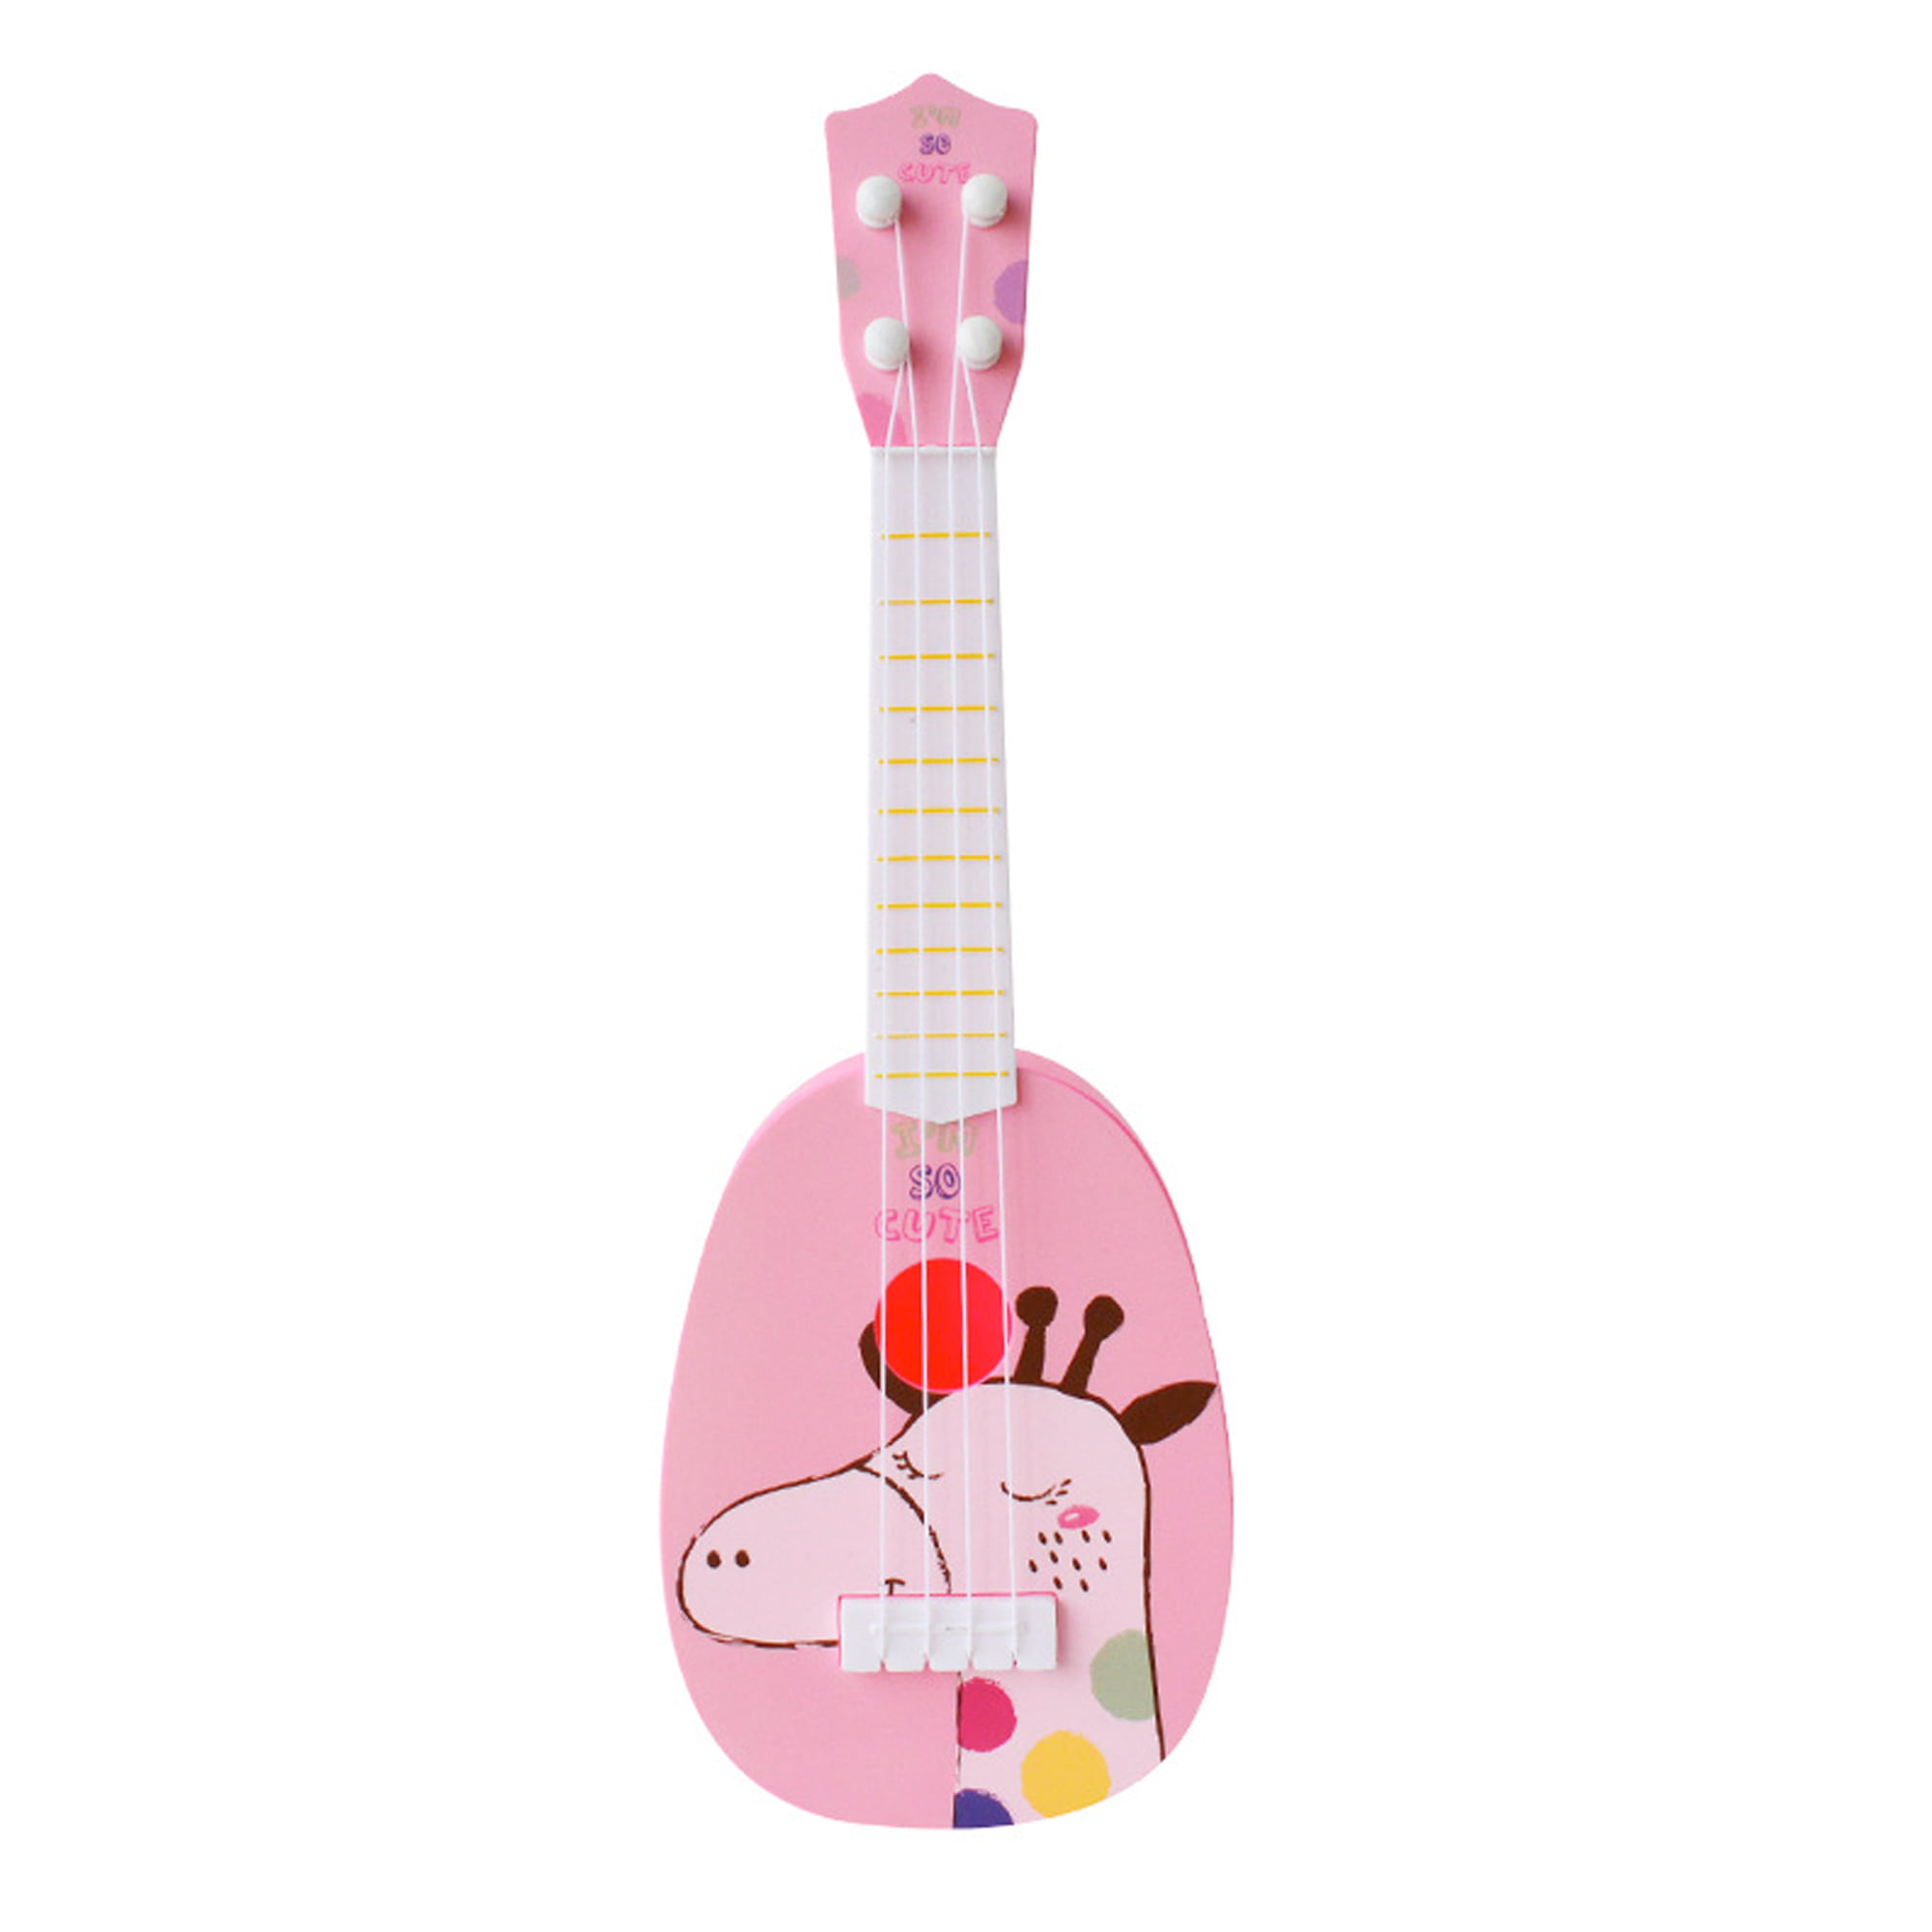 Kids Music & Art Development 4 Strings Guitar Ukulele Musical Instrument Toys 